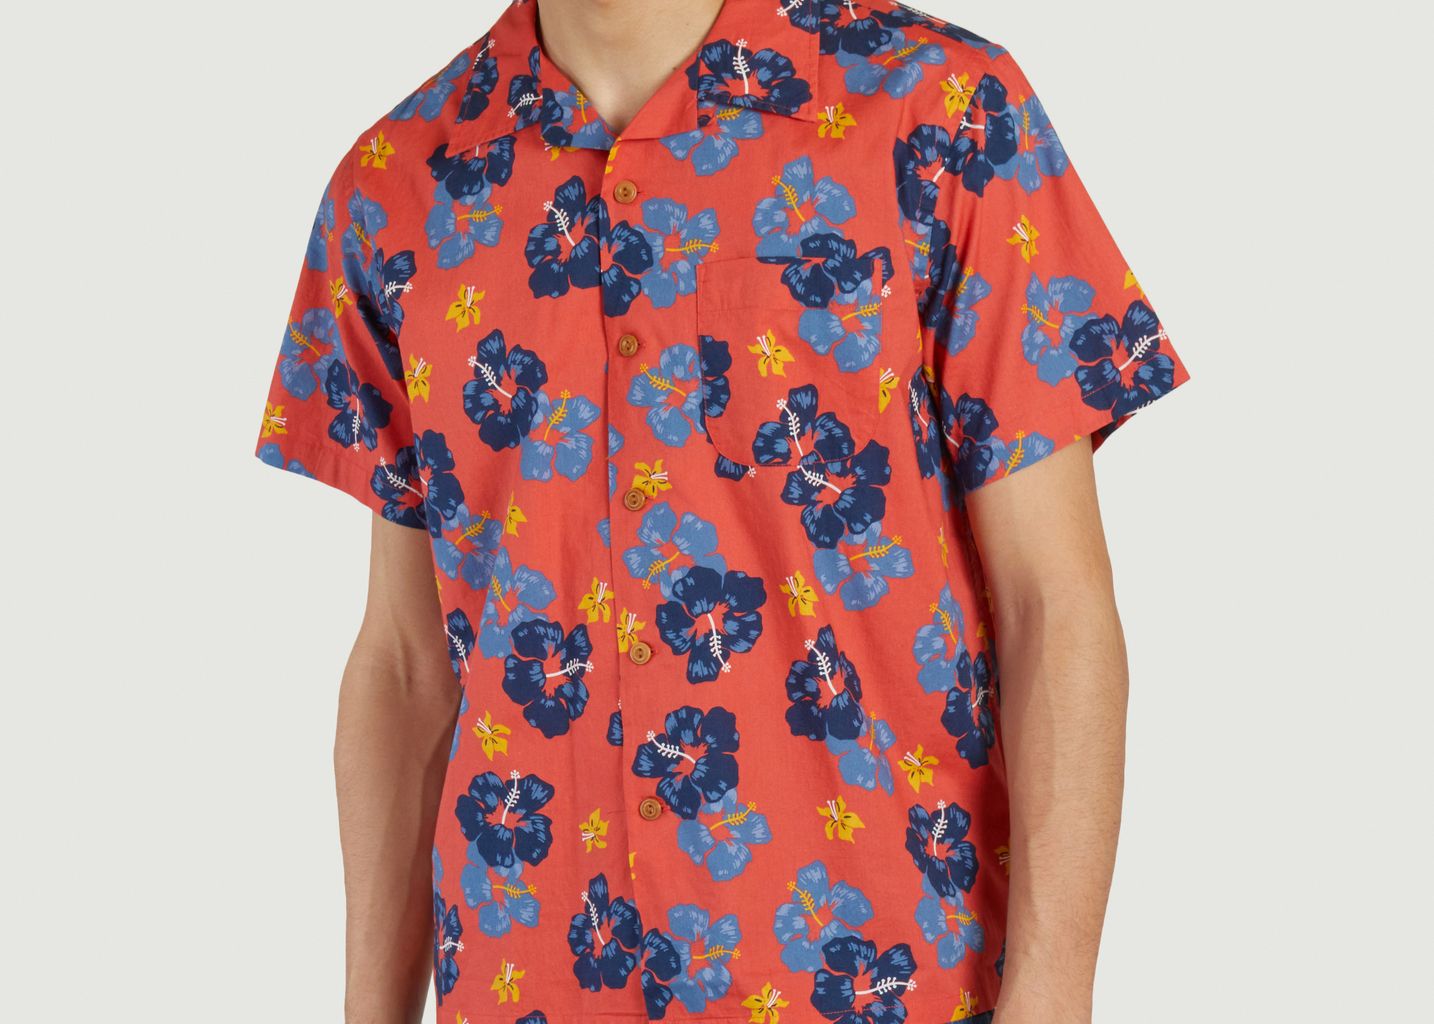 Hawaiihemd Arthur Flower - Nudie Jeans